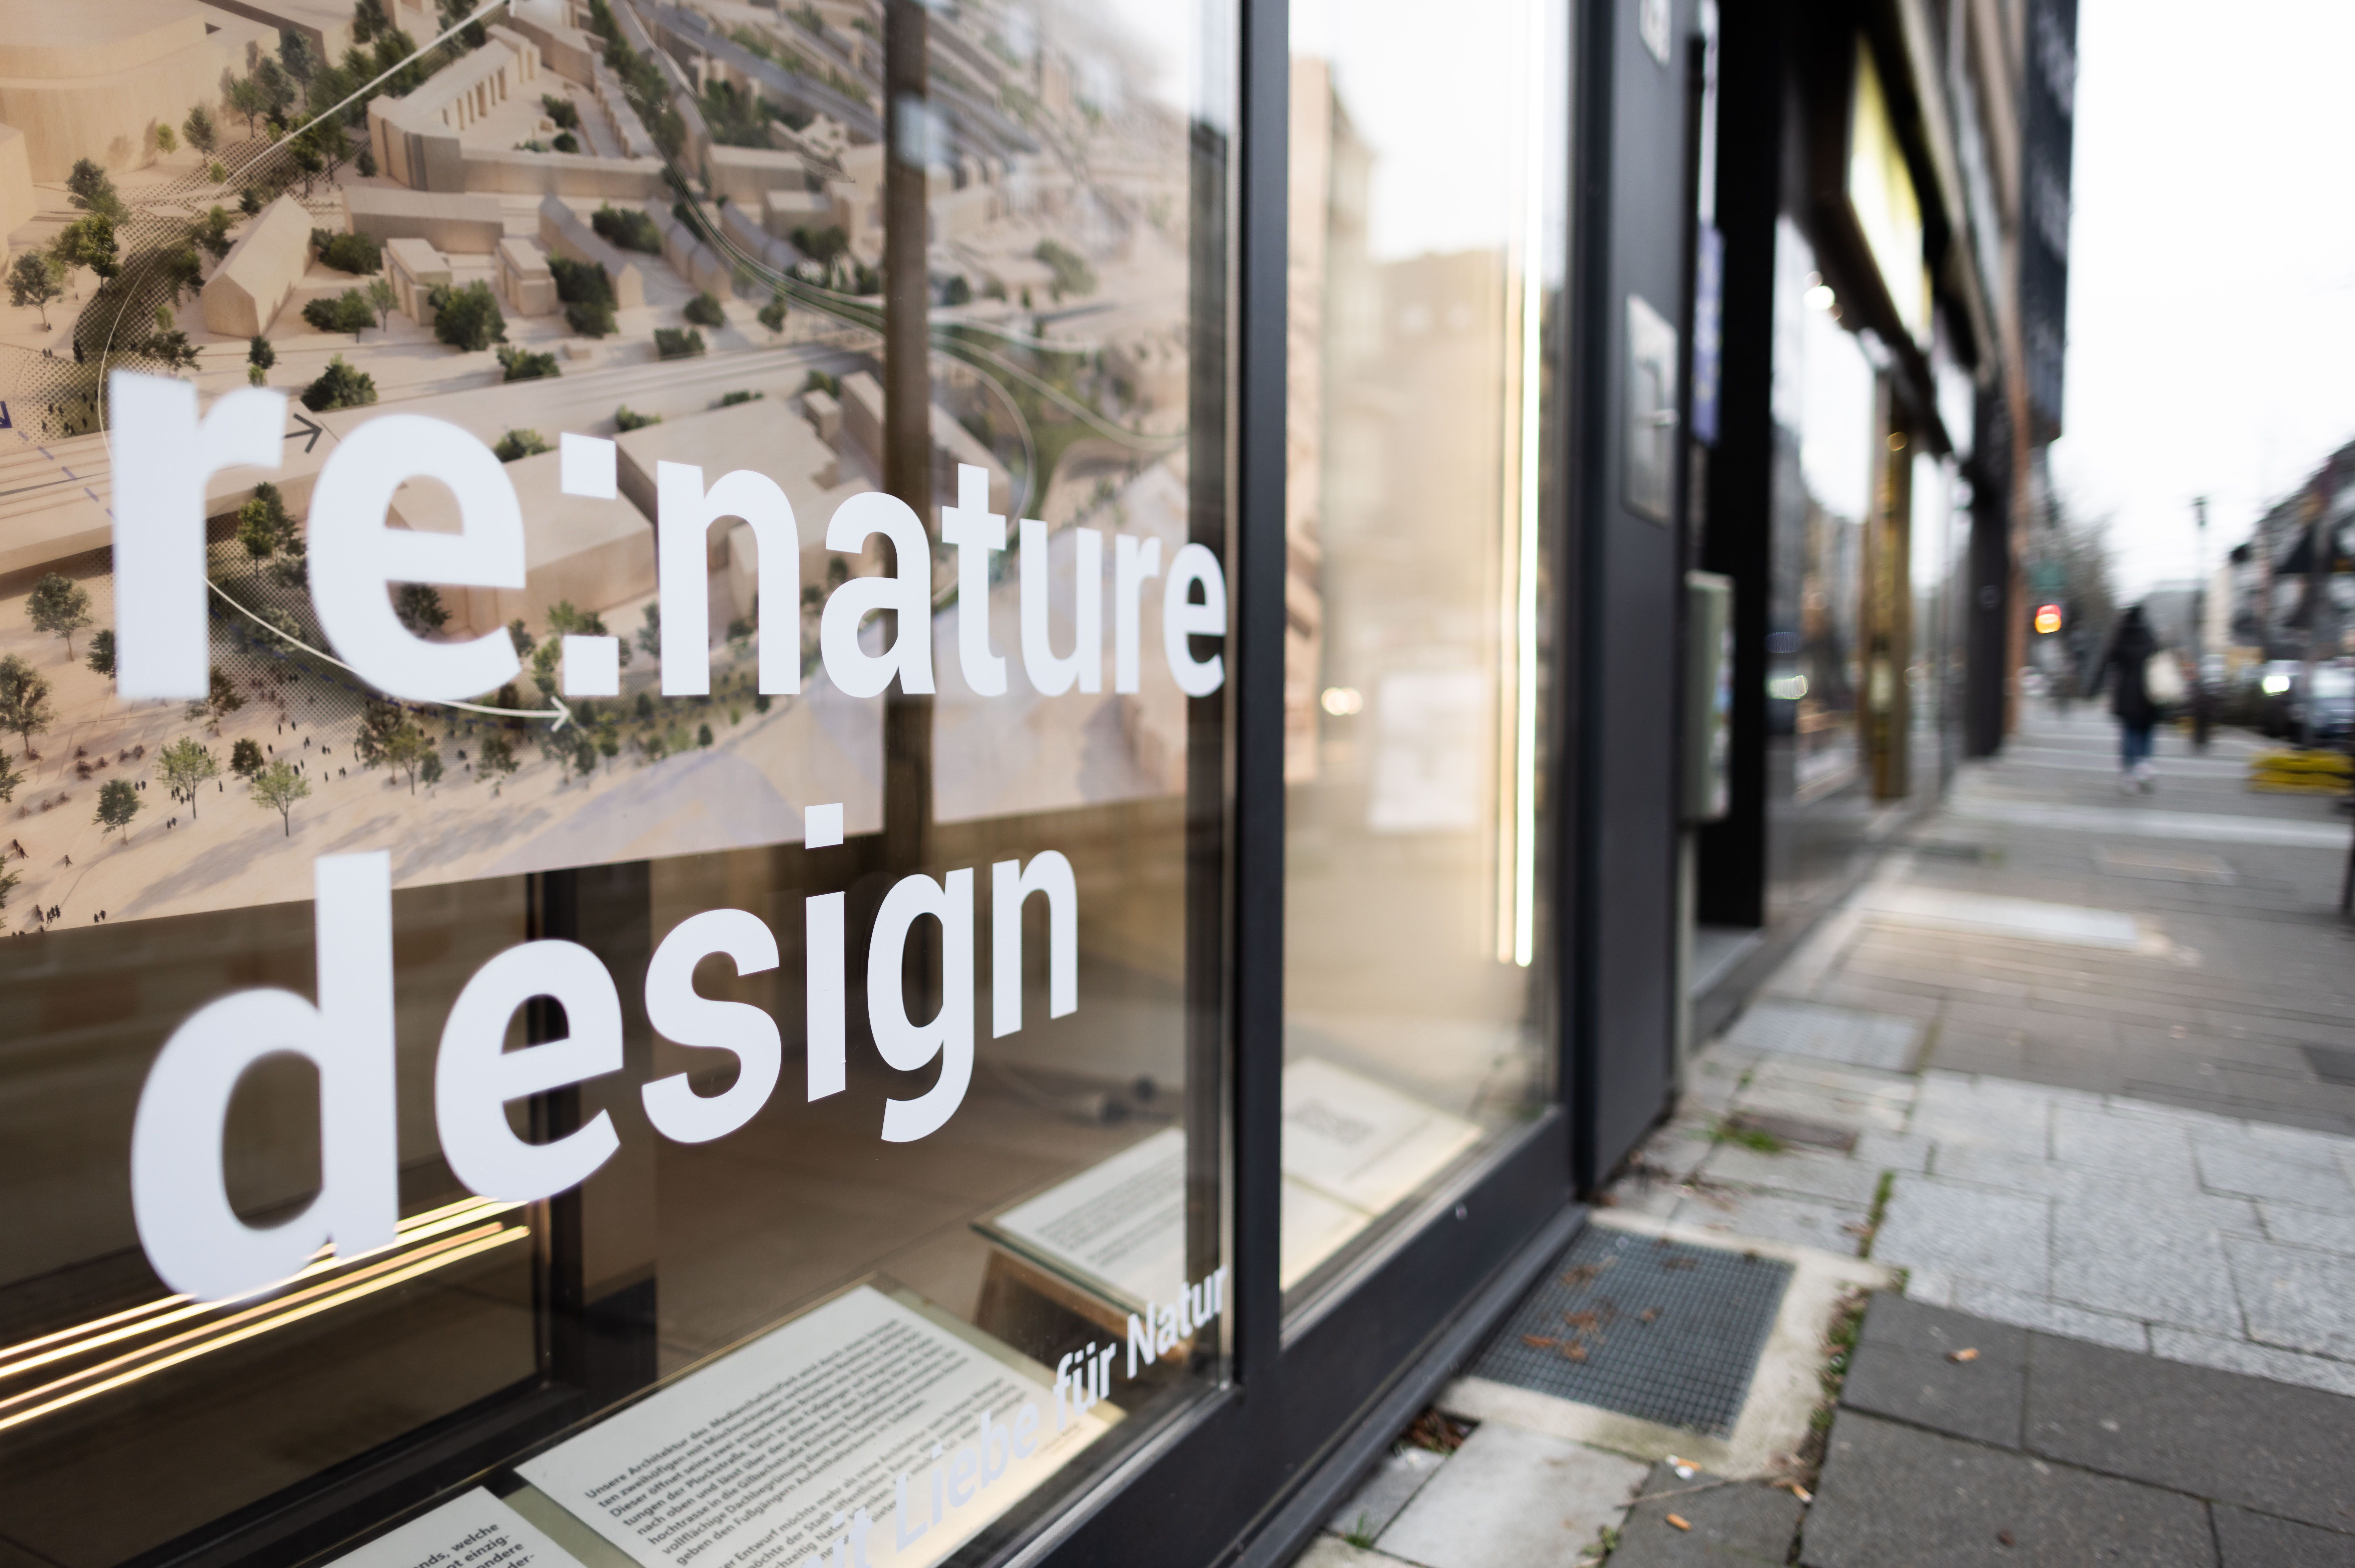 Zu den Gestalterinnen und Gestaltern des finalen Durchgangs zählt u.a. das Architektenteam re:nature © Landeshauptstadt Düsseldorf/Lars Heidrich 